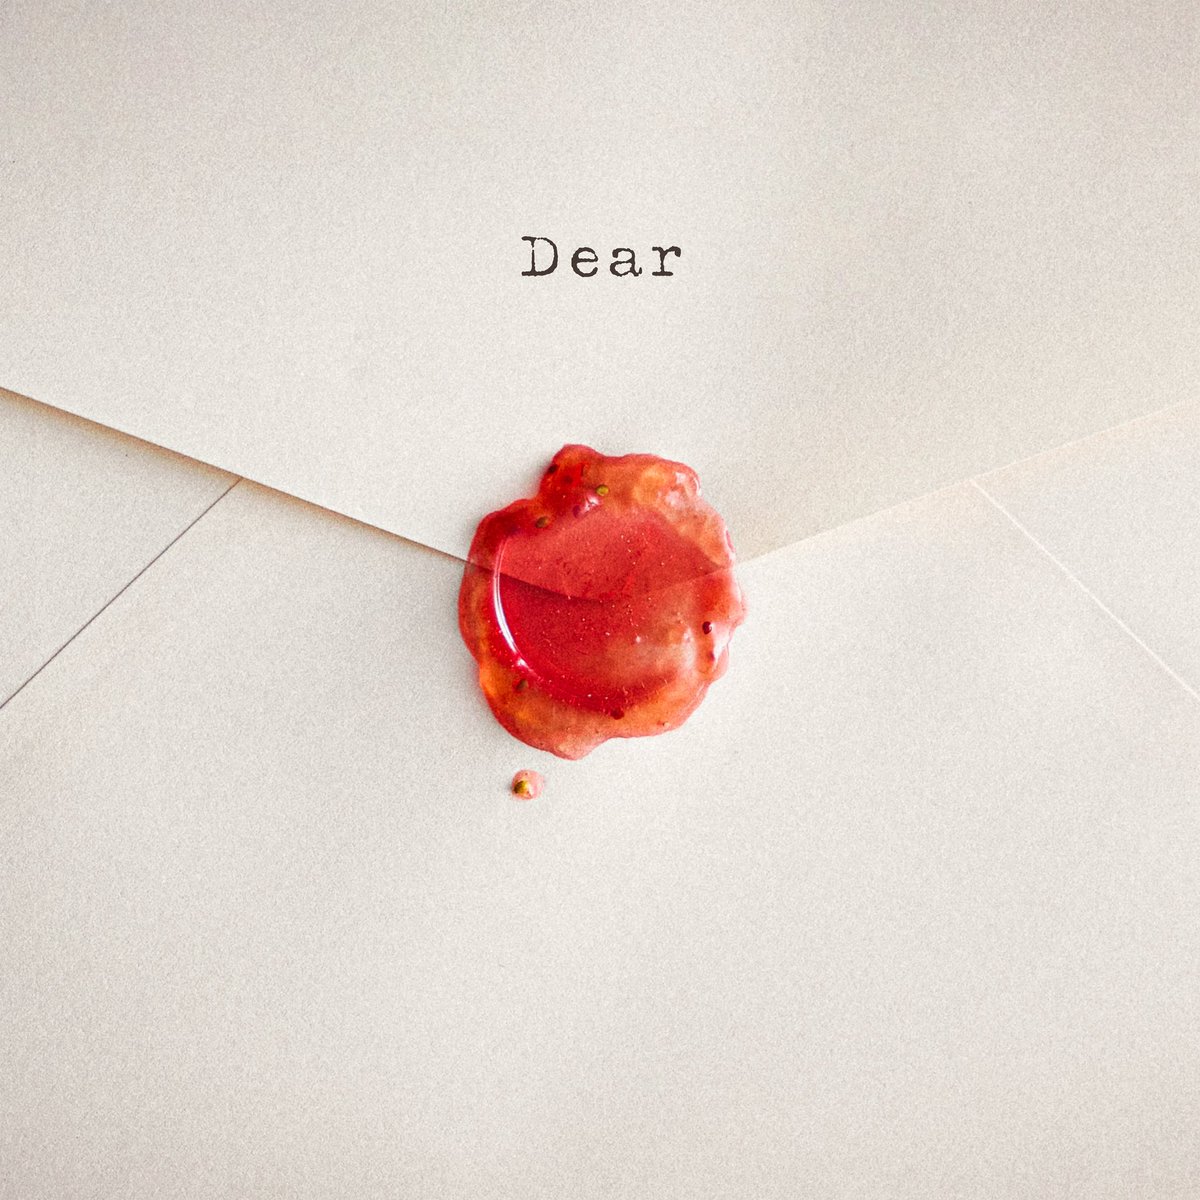 このあと０時から
新曲「Dear」の配信開始です✉️

“人生で書ける曲の数は決まっている”と僕は思ってるので、それ分の一曲になるわけです。